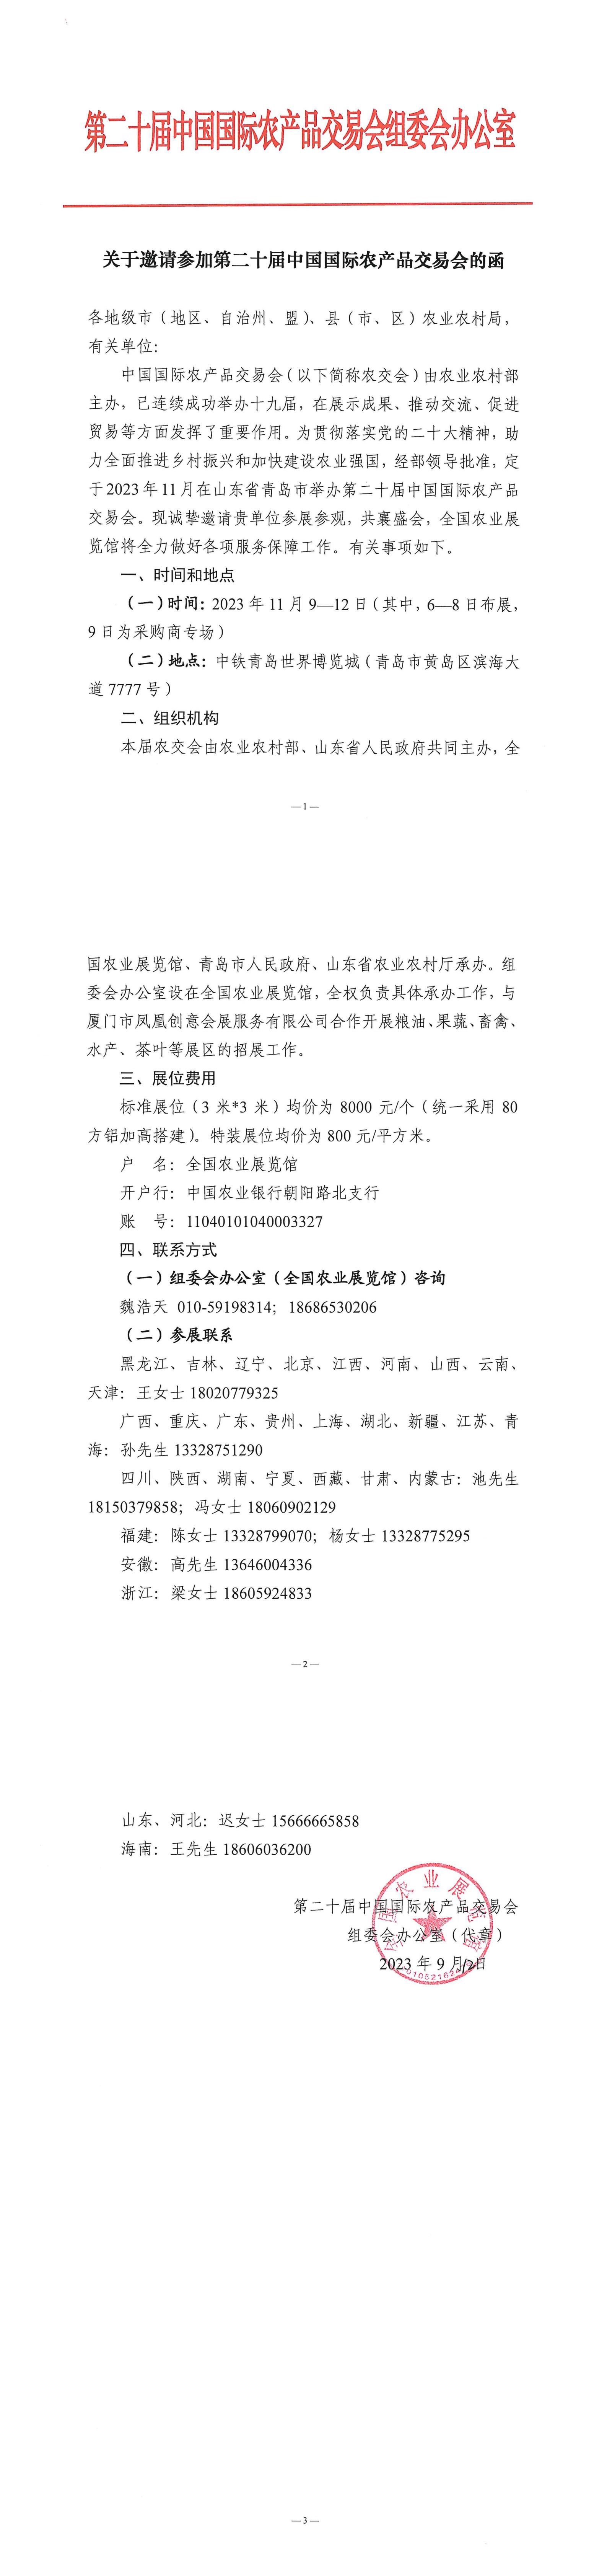 关于邀请参加第二十届中国国际农产品交易会的函_00.jpg